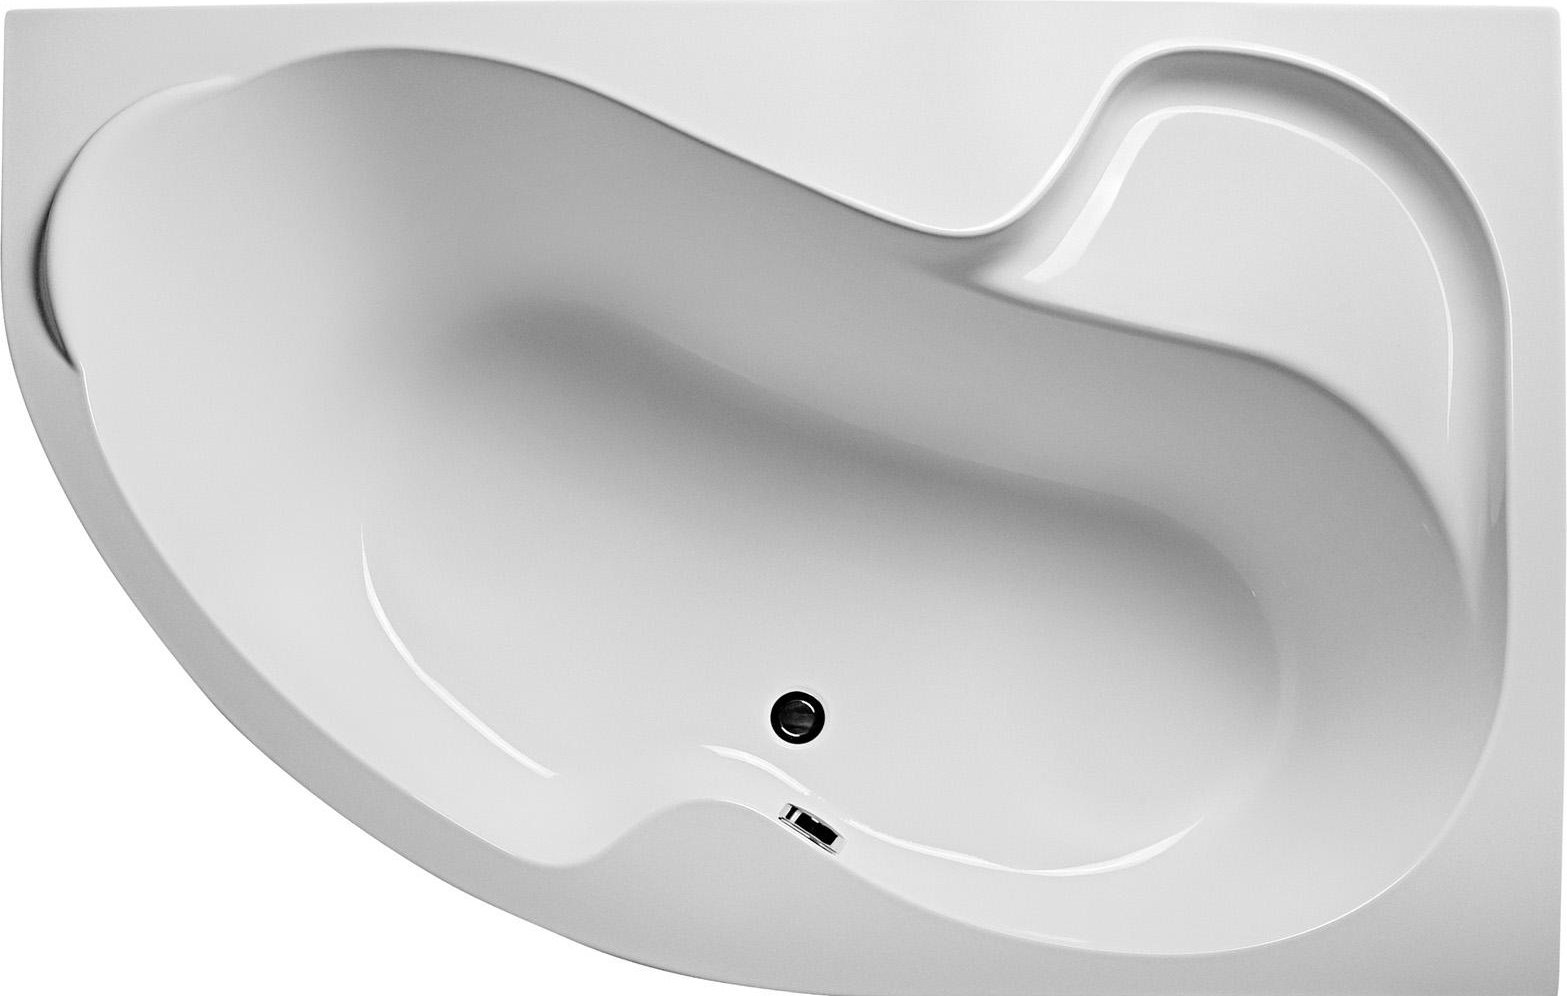 Акриловая ванна Marka One Aura 160x105 R, белый, акрил  - купить со скидкой